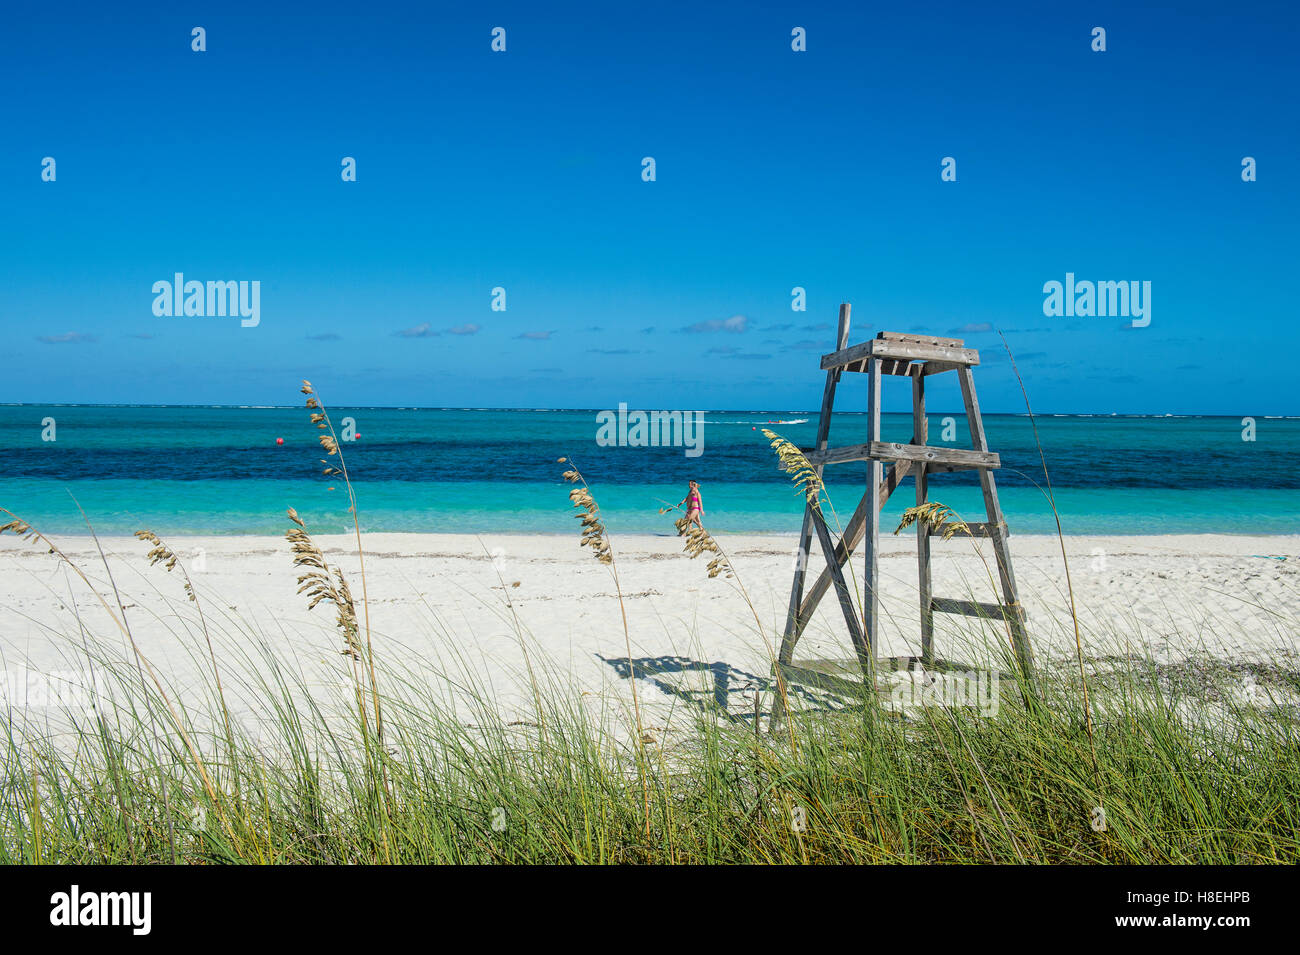 Célèbre Grace Bay Beach, Providenciales, Turks et Caicos, Caraïbes, Amérique Centrale Banque D'Images